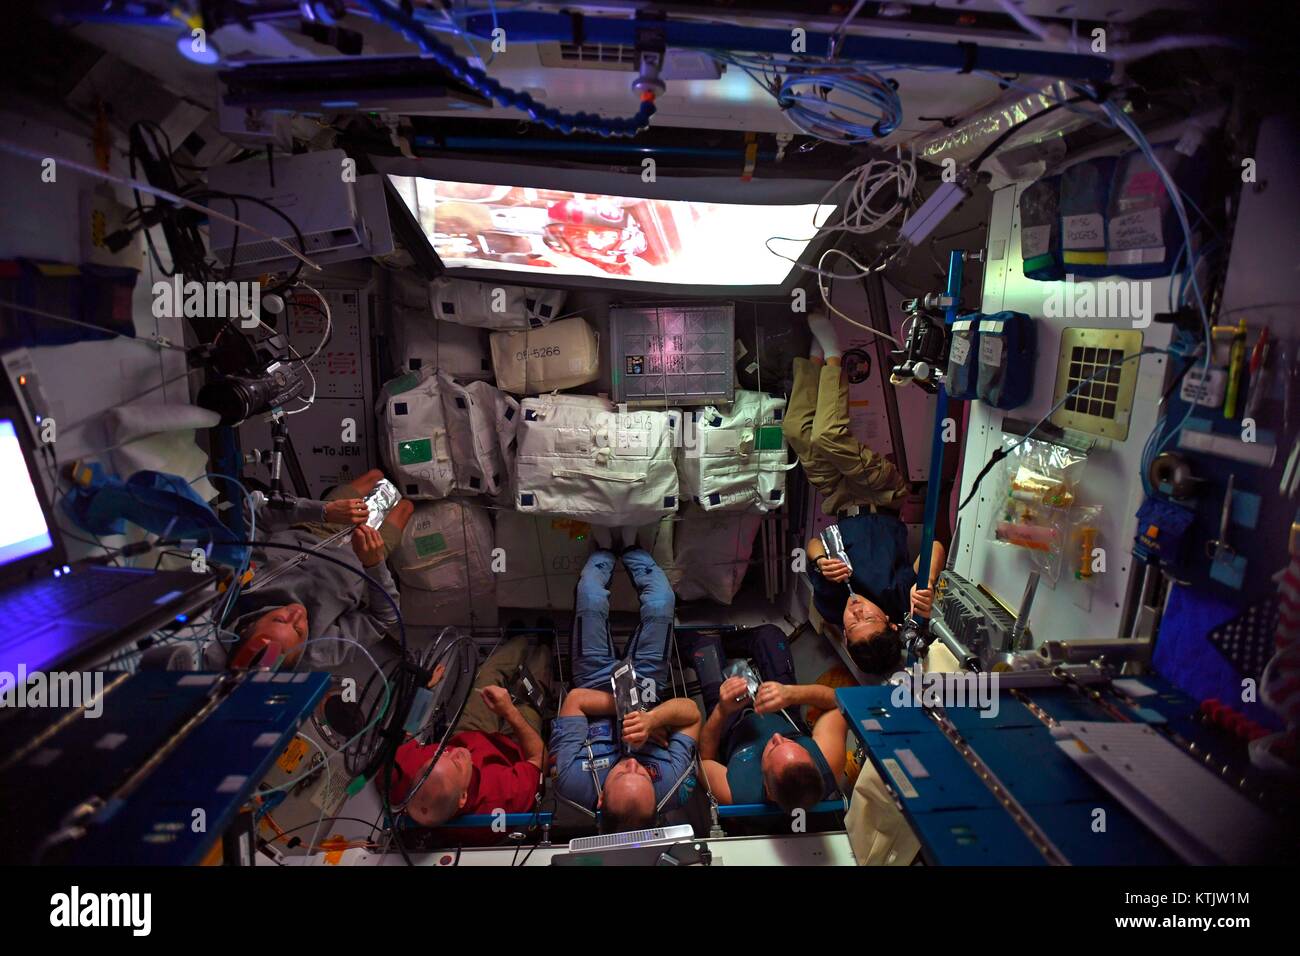 Expedition 54 Crew Mitglieder entspannen und Star Wars: Der letzte Jedi Film an Bord der Internationalen Raumstation am 23. Dezember 2017 in der Erdumlaufbahn. Mannschaft von Links nach Rechts: NASA-Astronauten Joe Acaba, Scott Tingle, Roskosmos Kosmonauten Alexander Misurkin und Anton Shkaplerov und JAXA Astronauten Norishige Kanai. Stockfoto